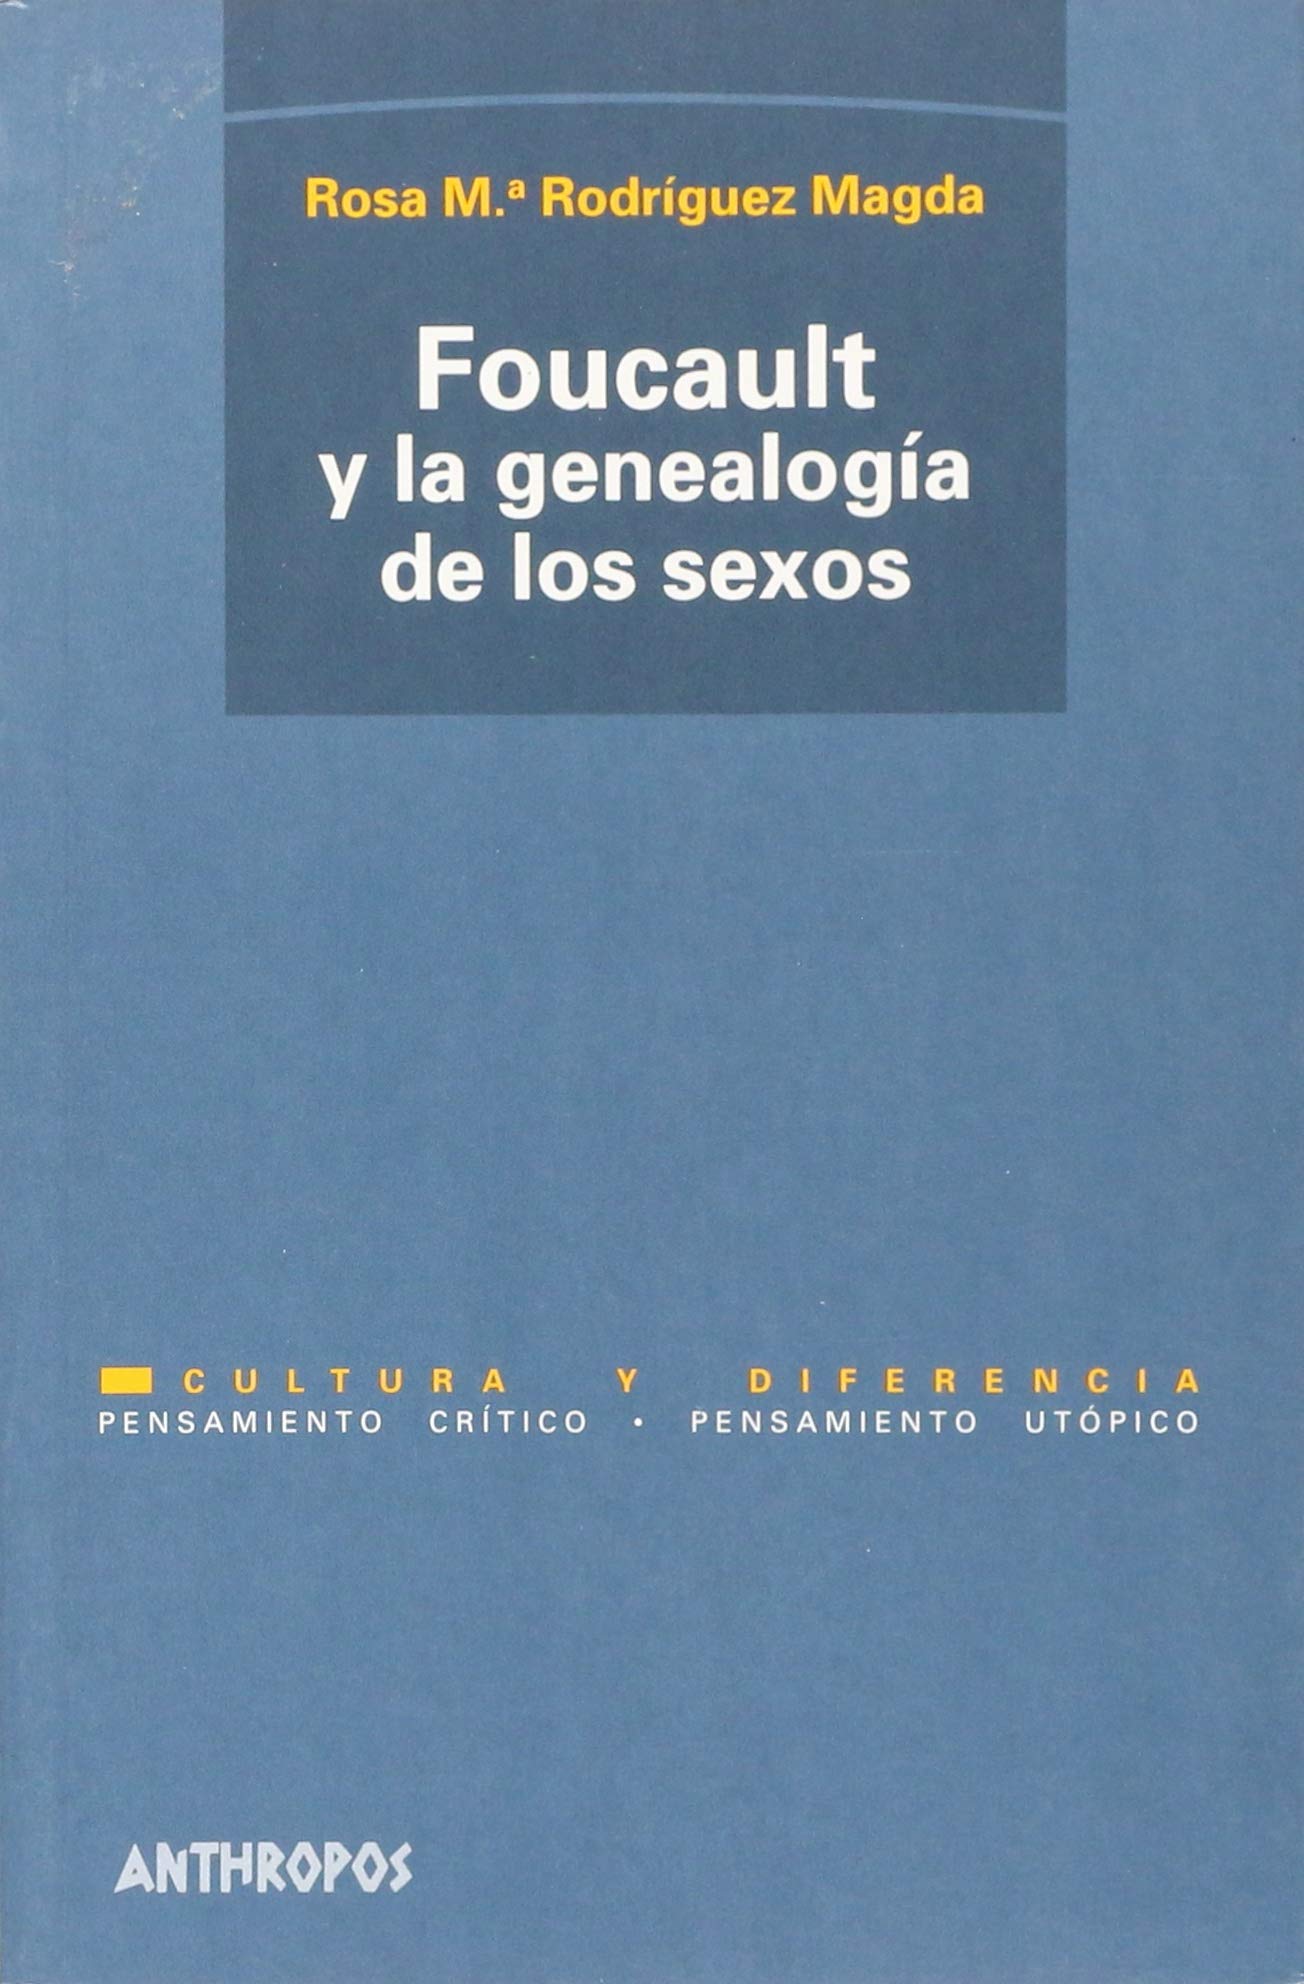 Imagen de portada del libro Foucault y la genealogía de los sexos